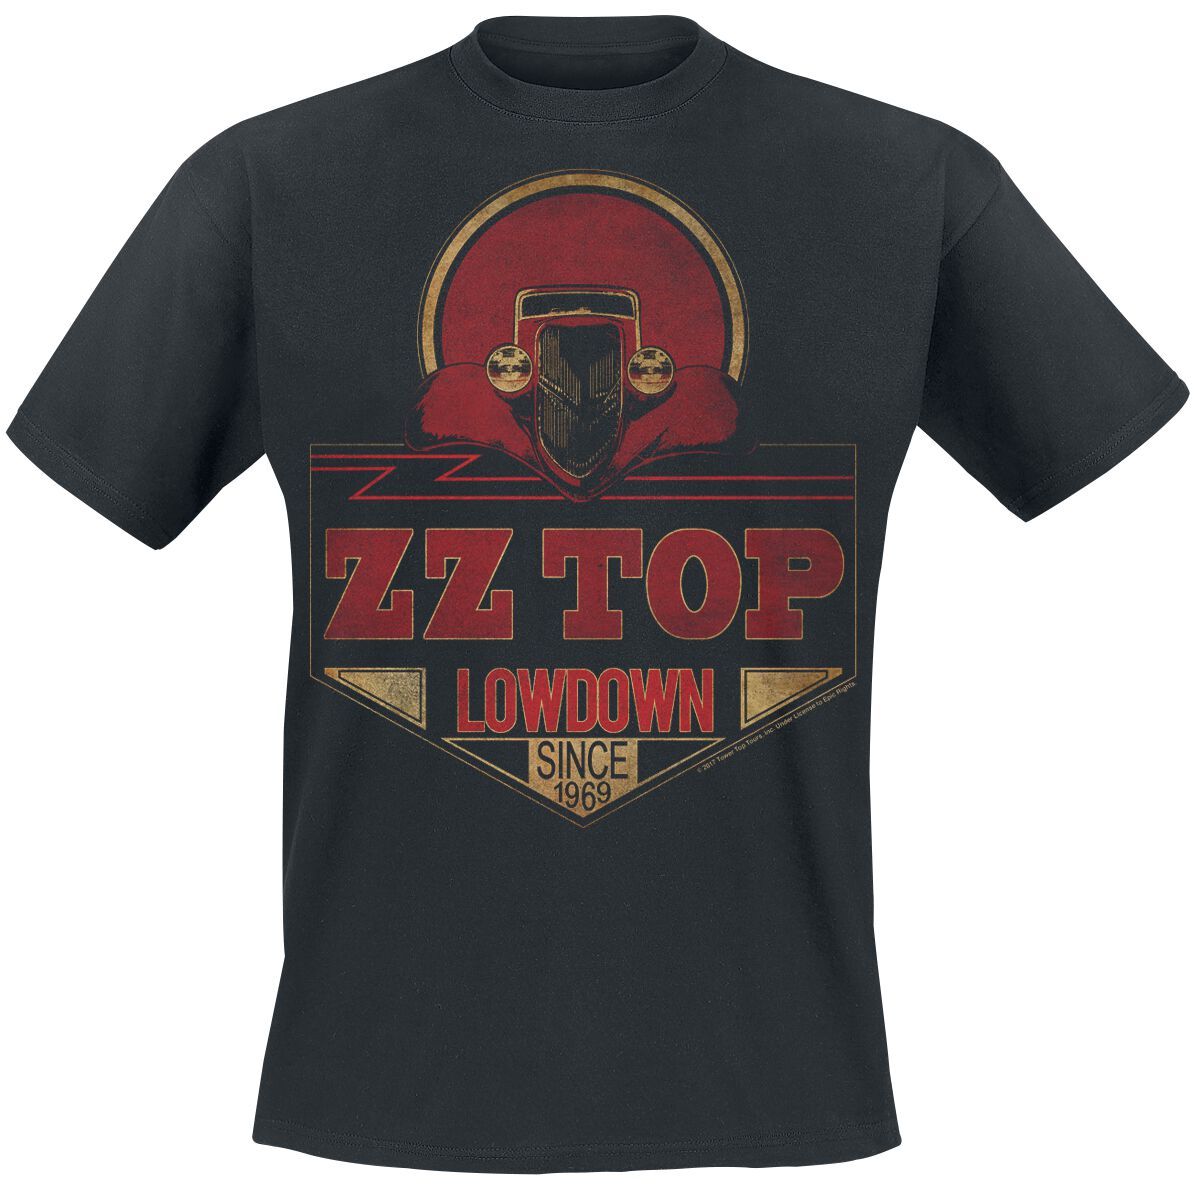 ZZ Top T-Shirt - Lowdown Since 1969 - S bis XXL - für Männer - Größe M - schwarz  - Lizenziertes Merchandise!